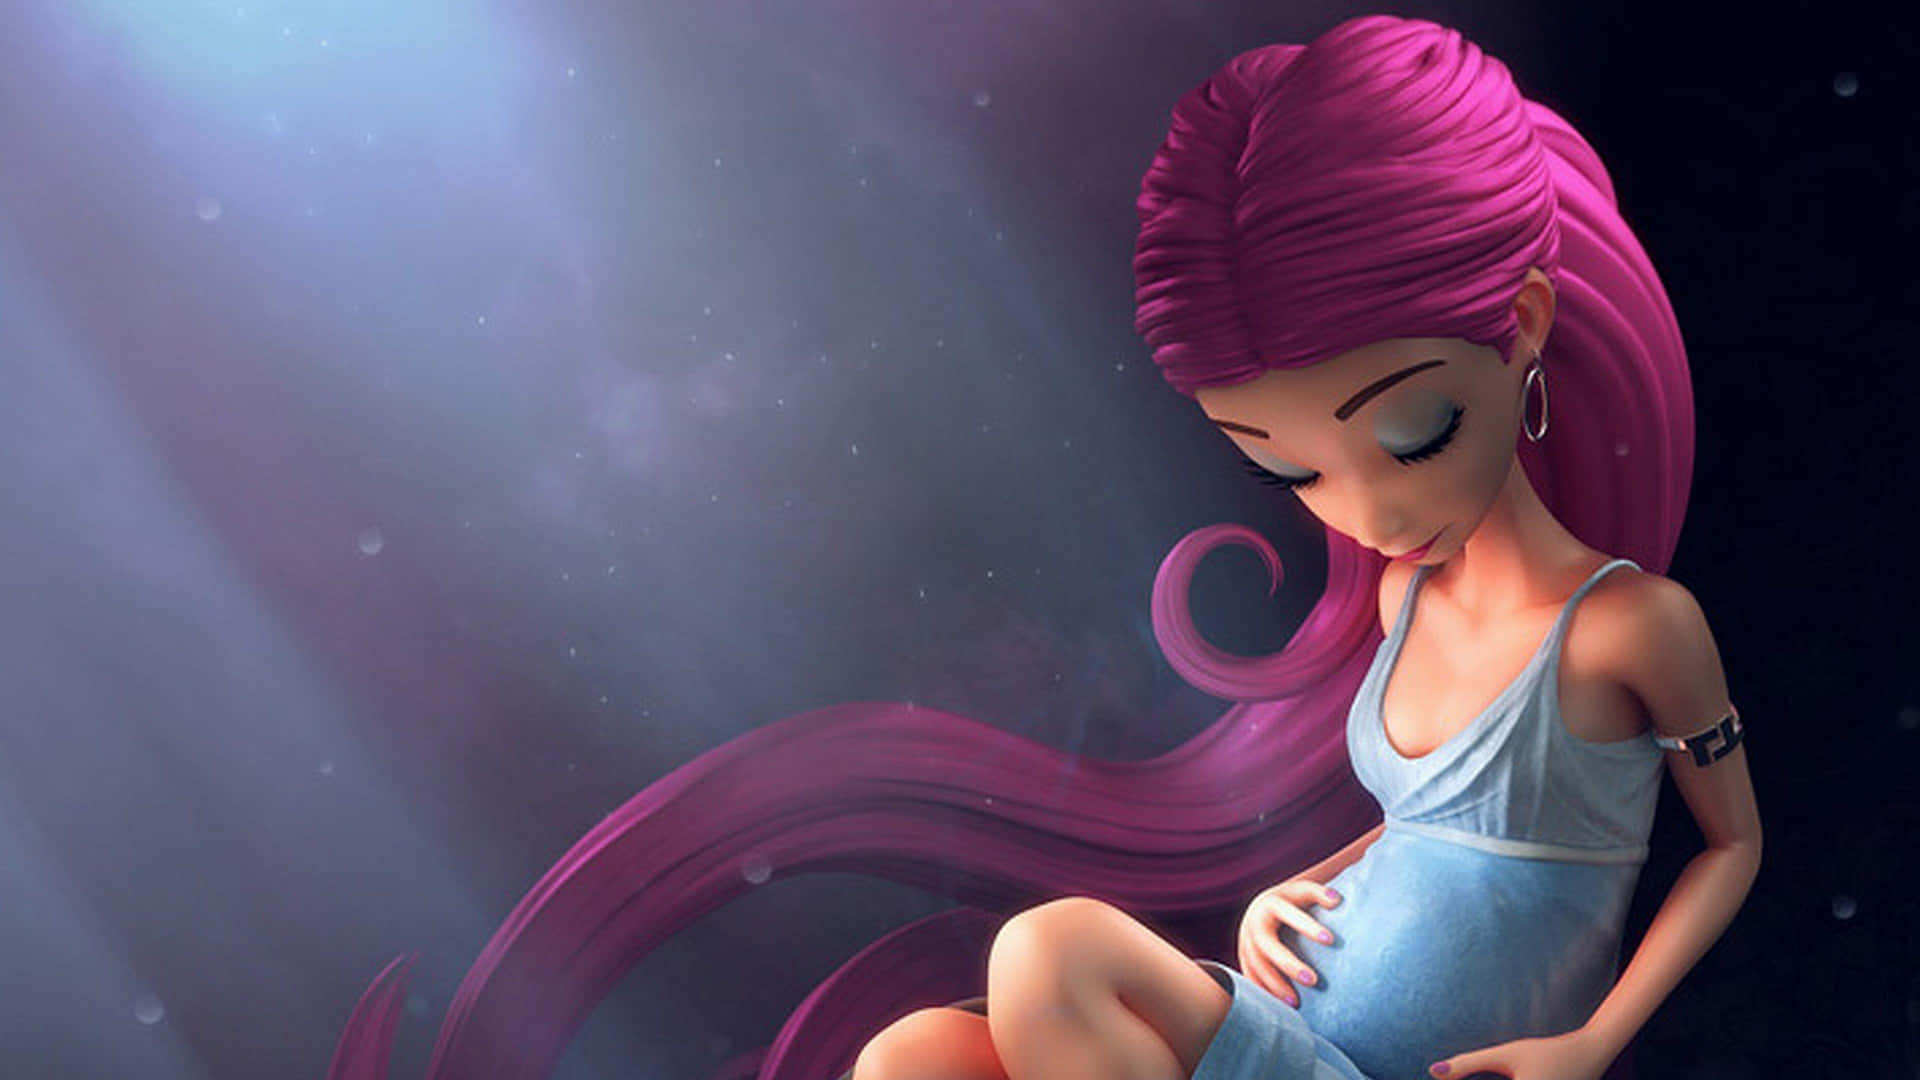 Immaginedi Una Donna Con I Capelli Rosa In Stile Cartone Animato Durante La Maternità.